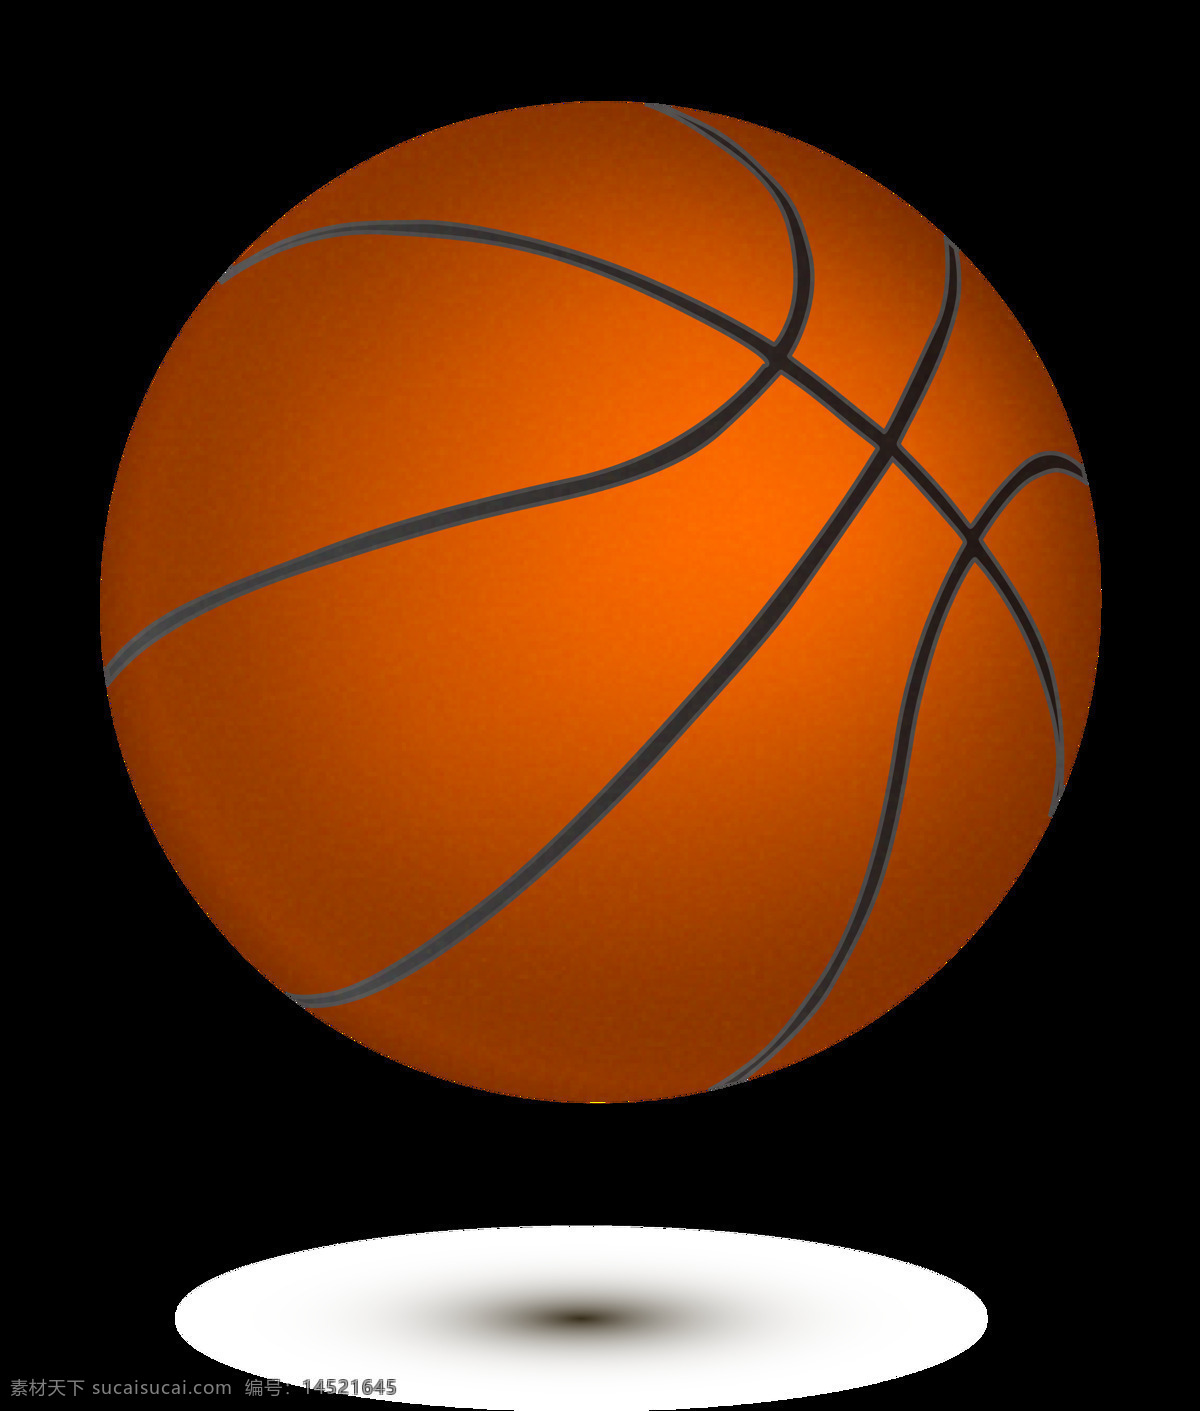 写实 风格 篮球 插图 免 抠 透明 图 层 打蓝球 蓝球运动 投篮 nba cba 篮球比赛 篮球手绘元素 卡通篮球 篮球海报 篮球运动员 投篮剪影 篮球素材 手绘篮球 篮球插图